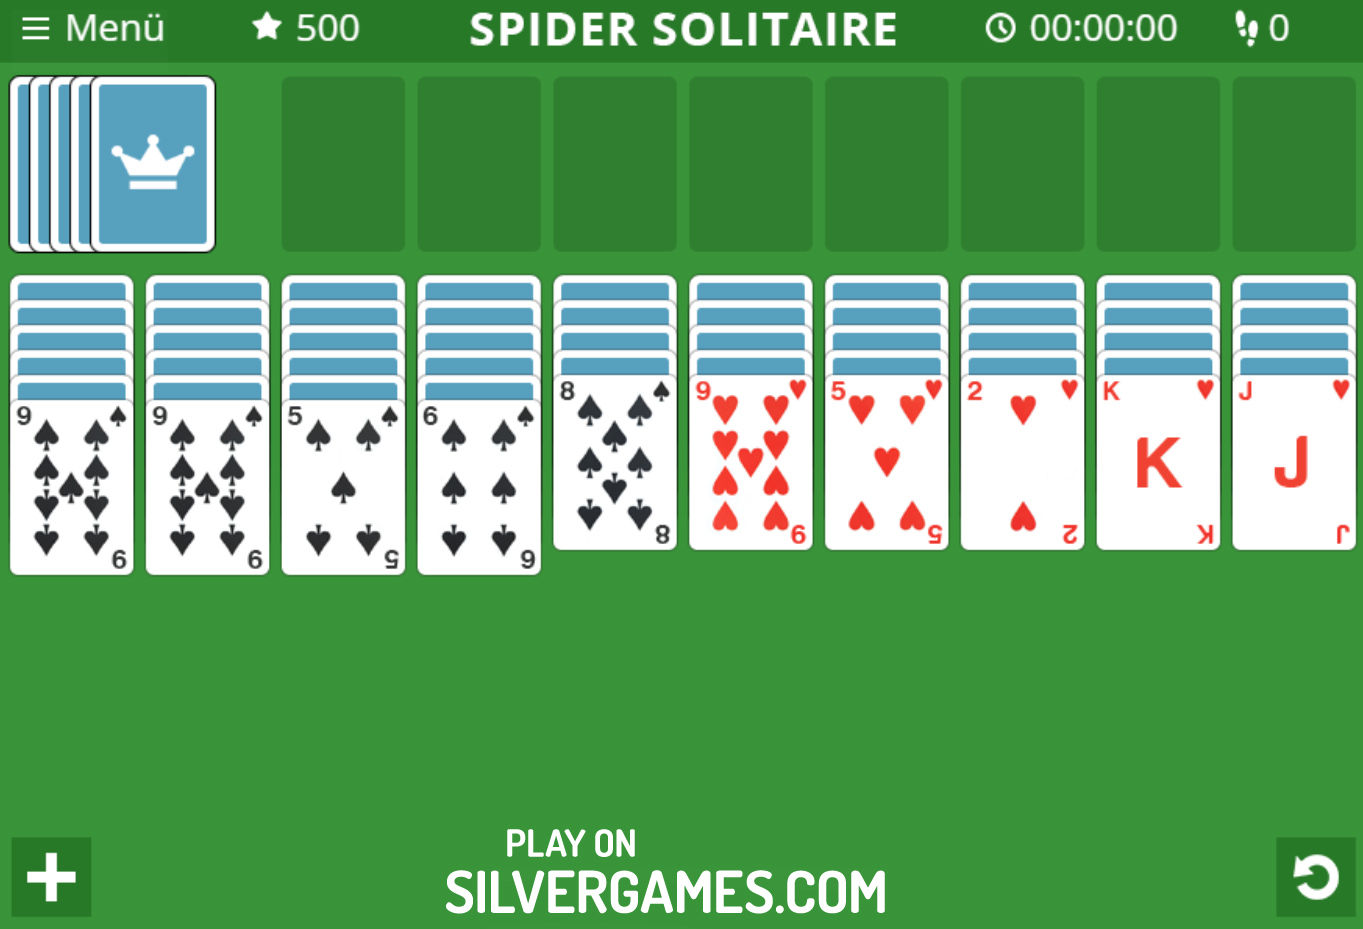 Jogos grátis online de cartas: Solitario, Solitario Spider, Freecell